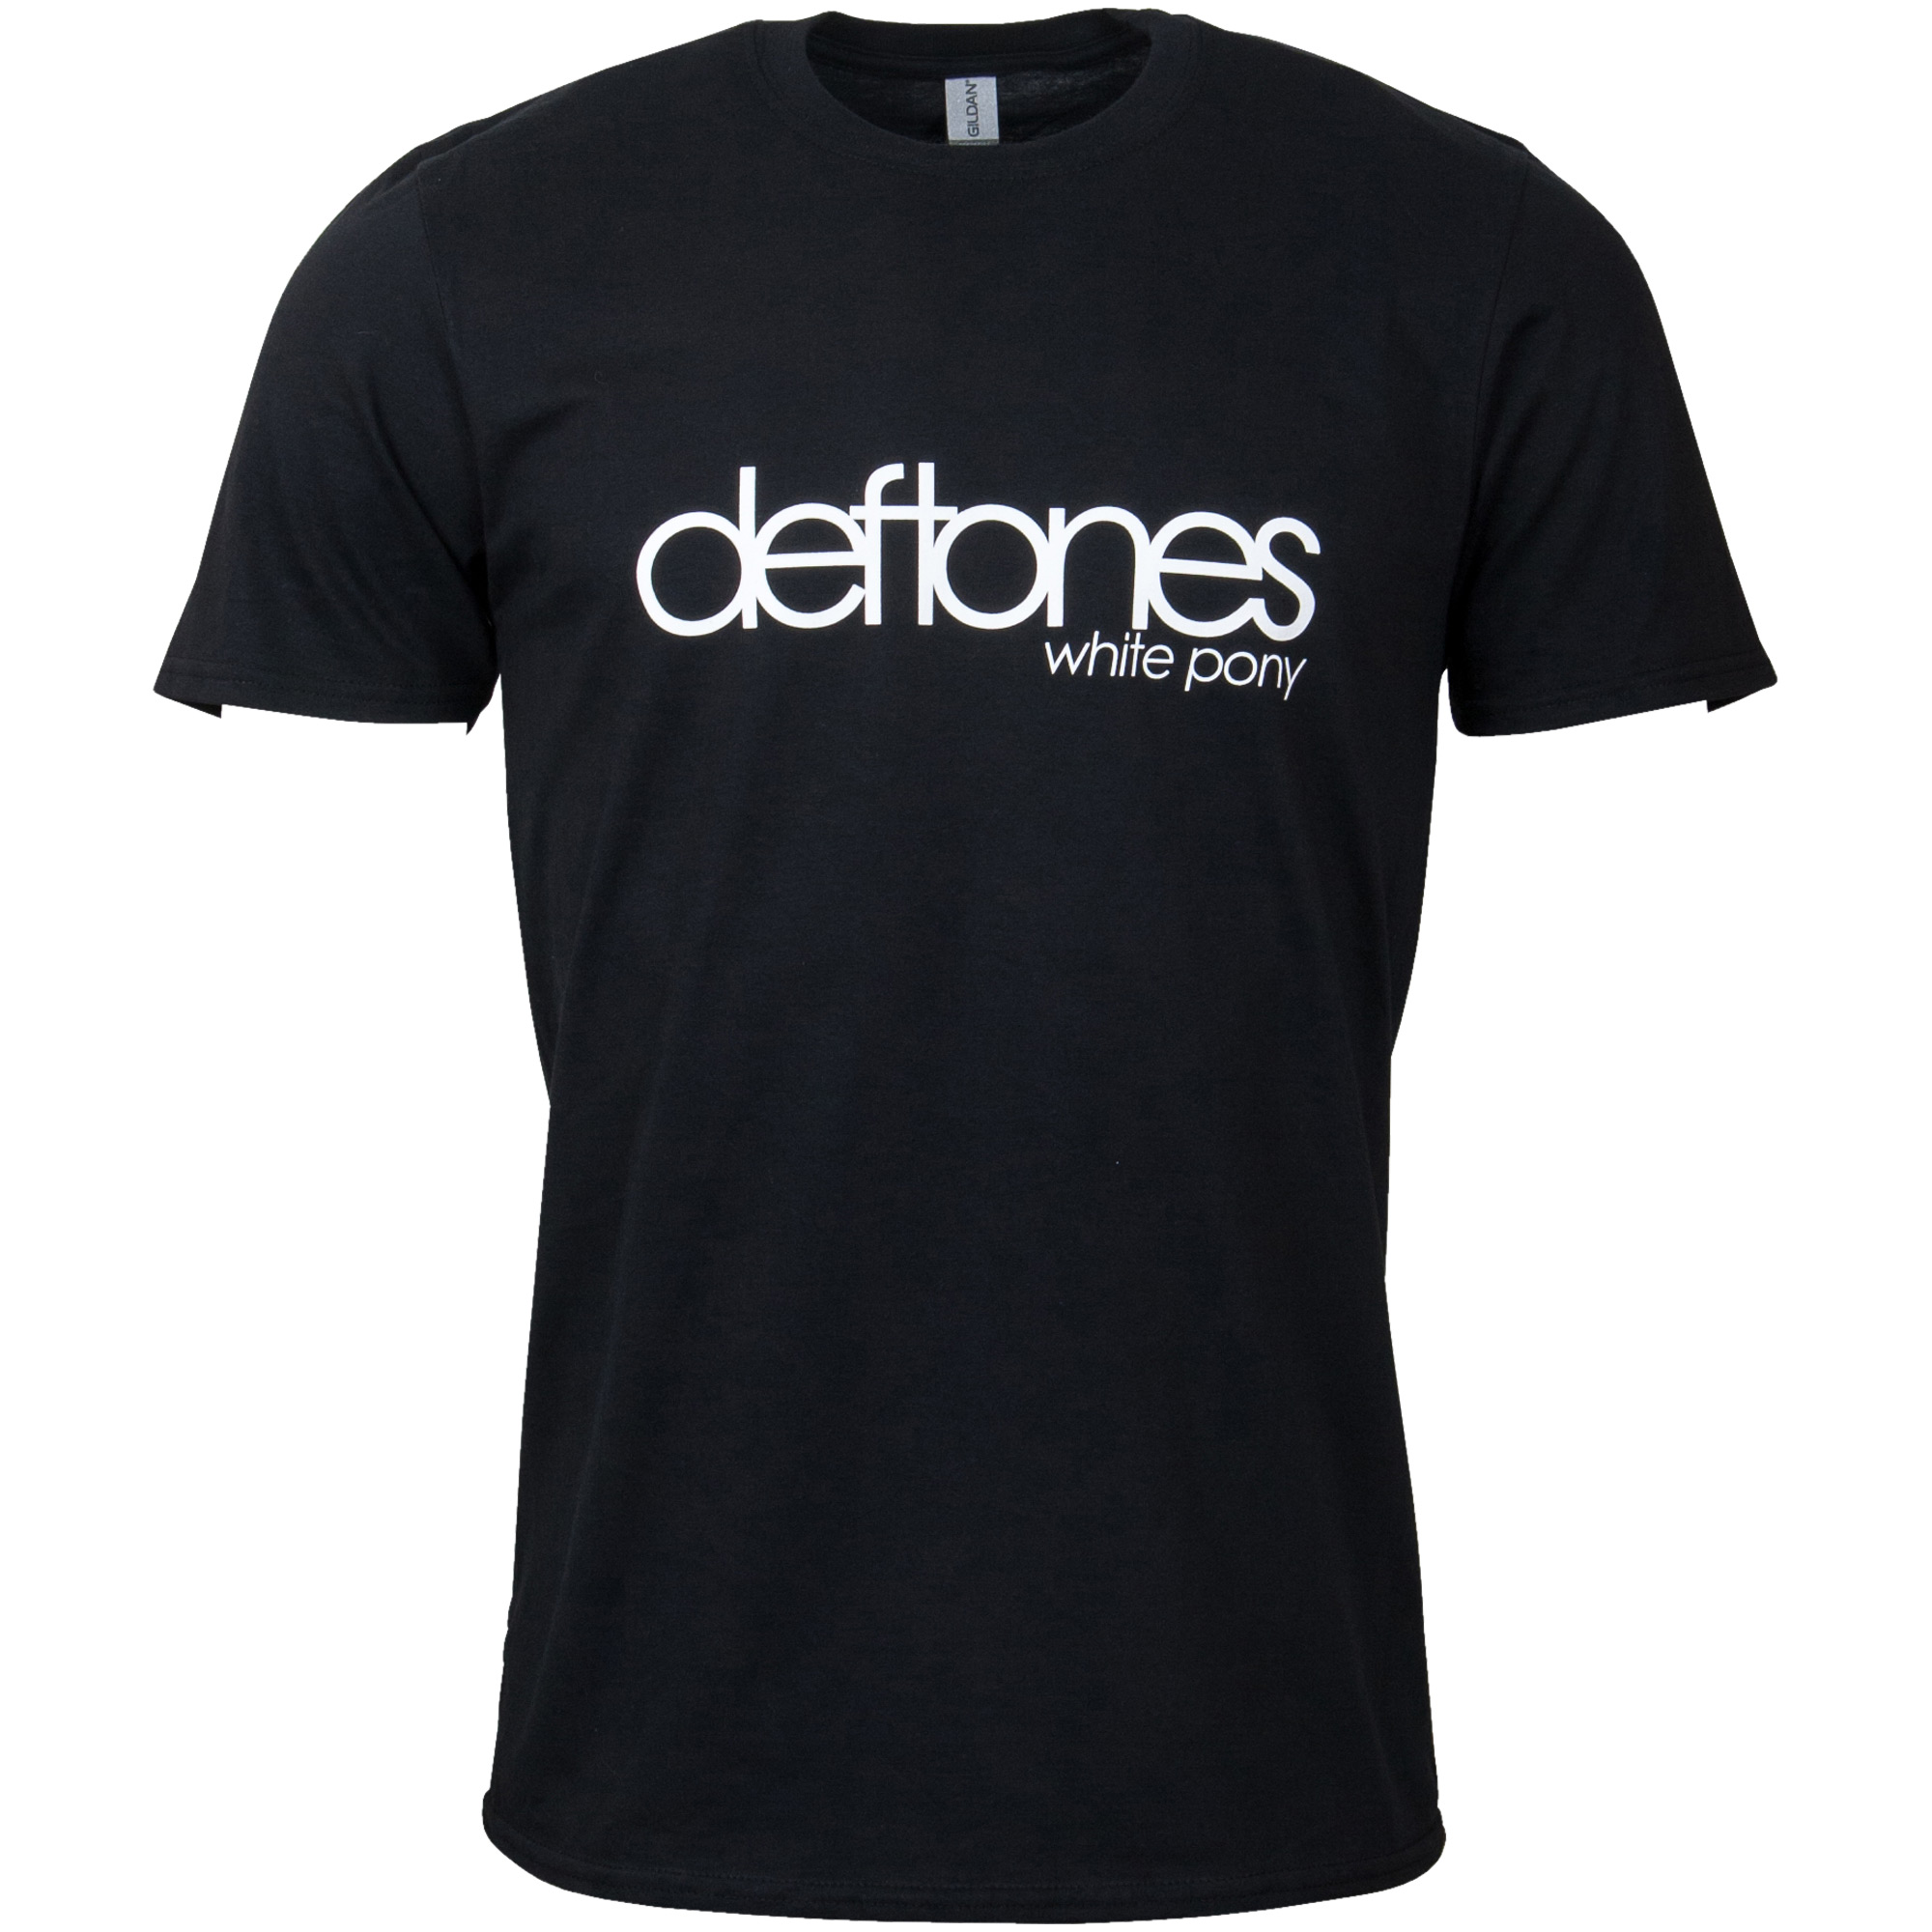 Deftones - T-Shirt Album White Pony - schwarz